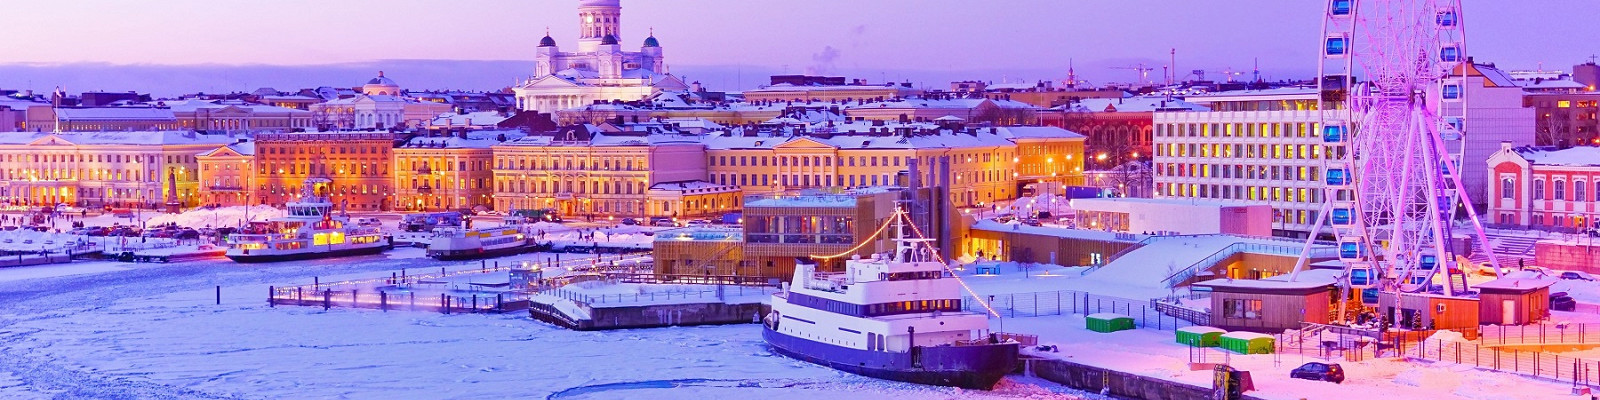 Туры в Финляндию из Санкт-Петербурга – туристическая компания «Искатель»